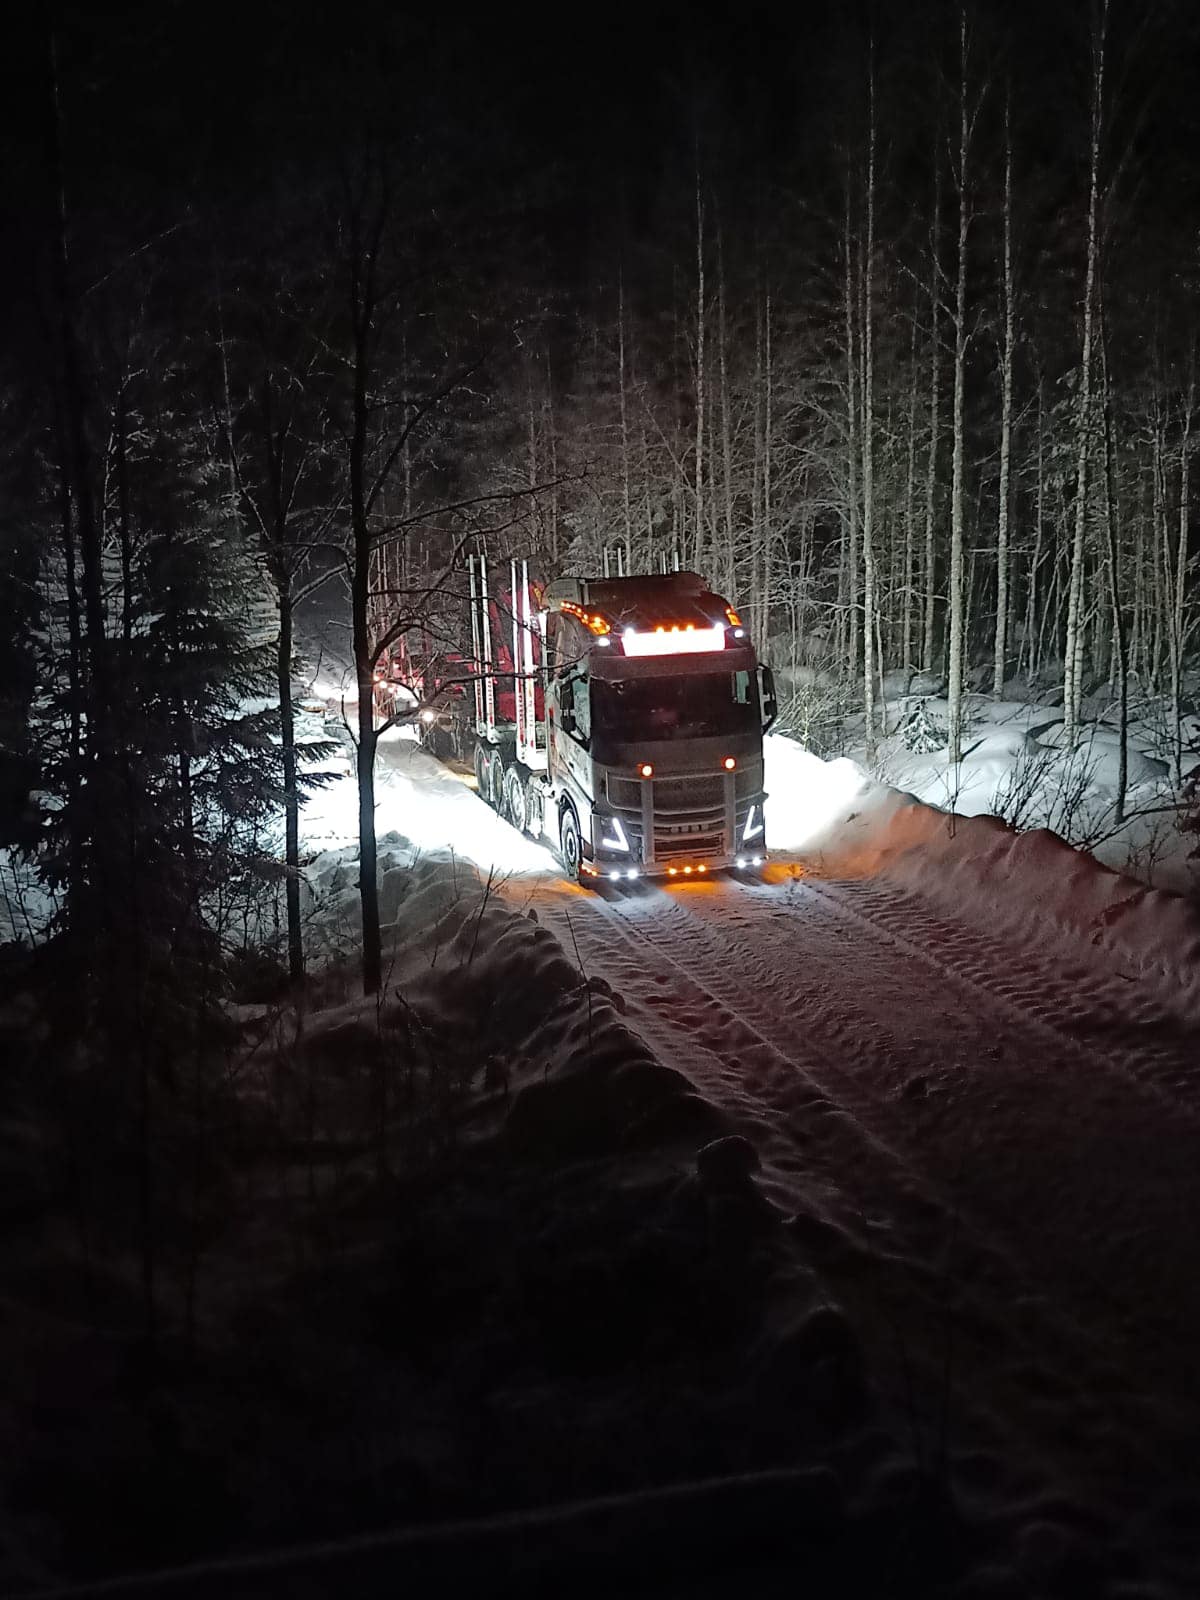 Puuautolla talvisella pimeällä metsätiellä. T&T Kangasharju ajaa puuta yhden puuauton voimin pohjoisessa Suomessa.